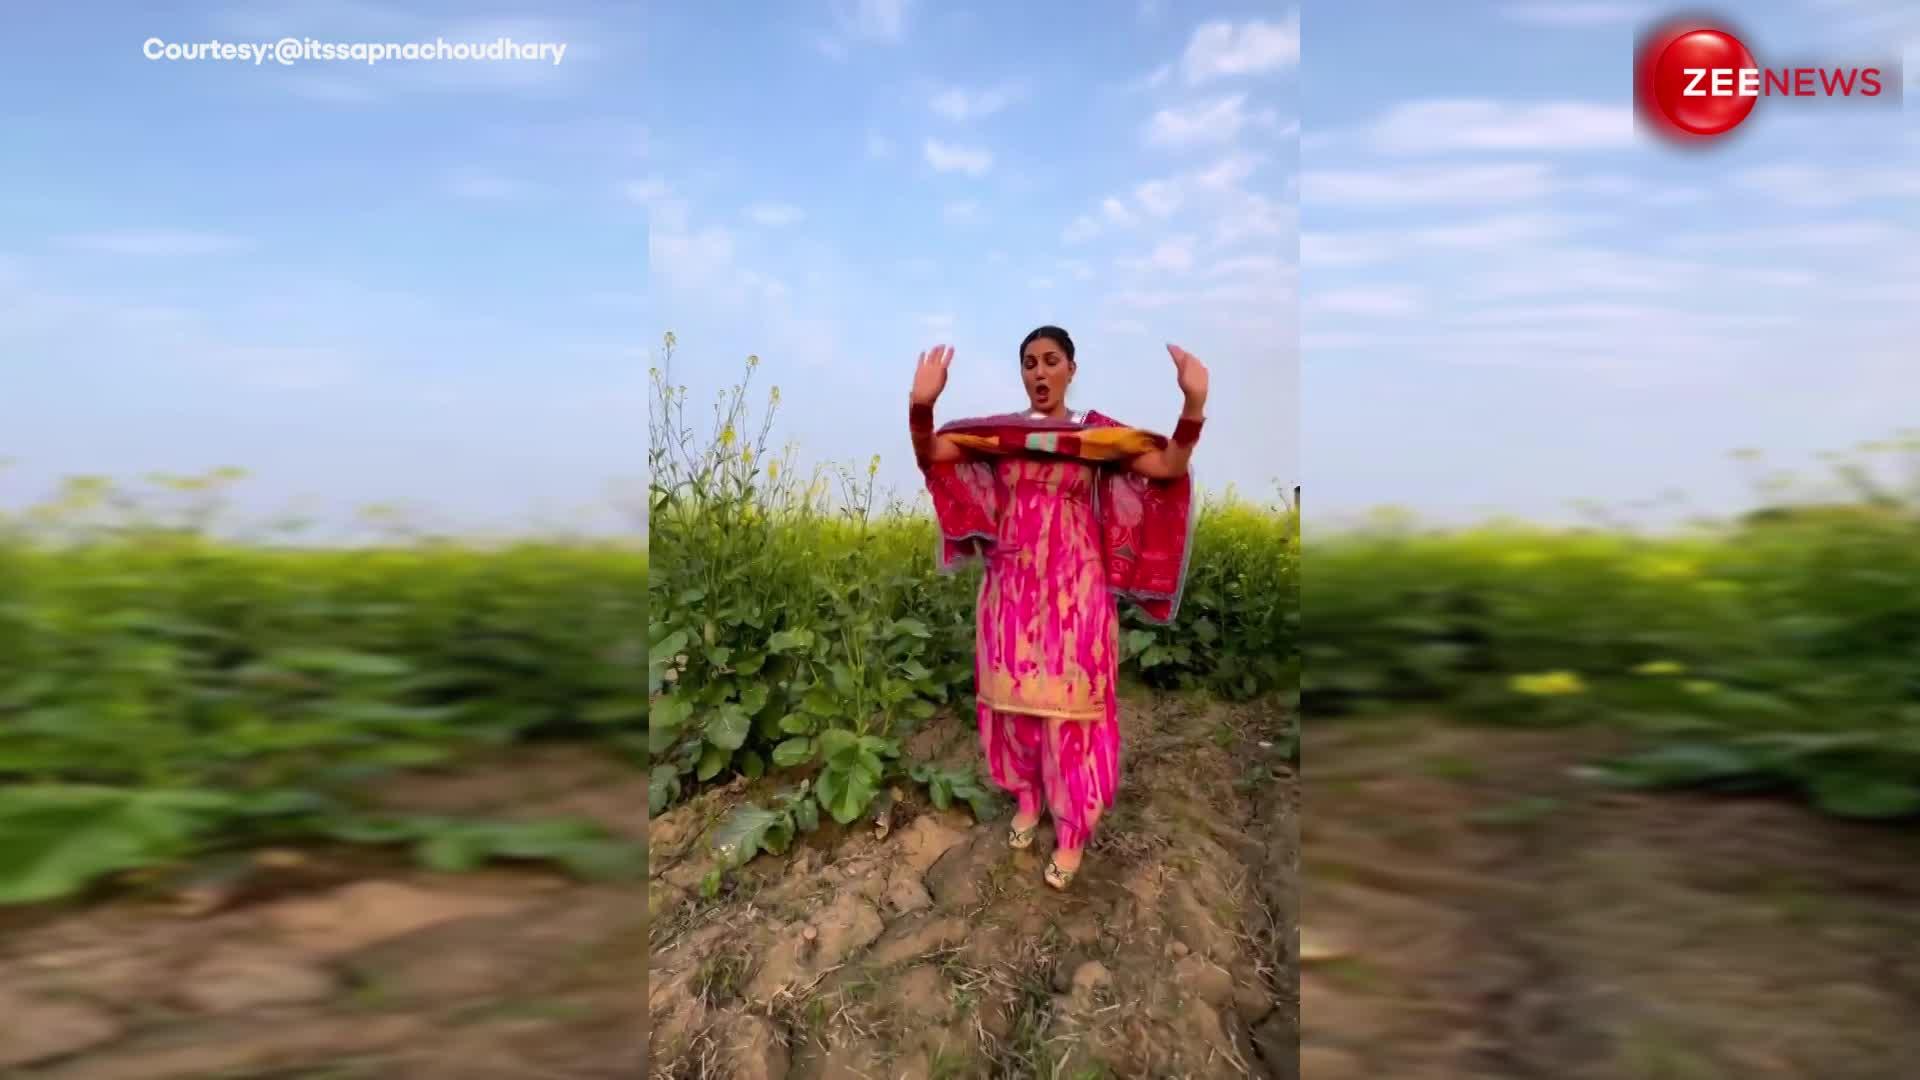 सरसों के खेत में खड़े होकर Sapna Choudhary ने किया धमाकेदार डांस, हरियाणवी बीट पर खूब मारे ठुमके